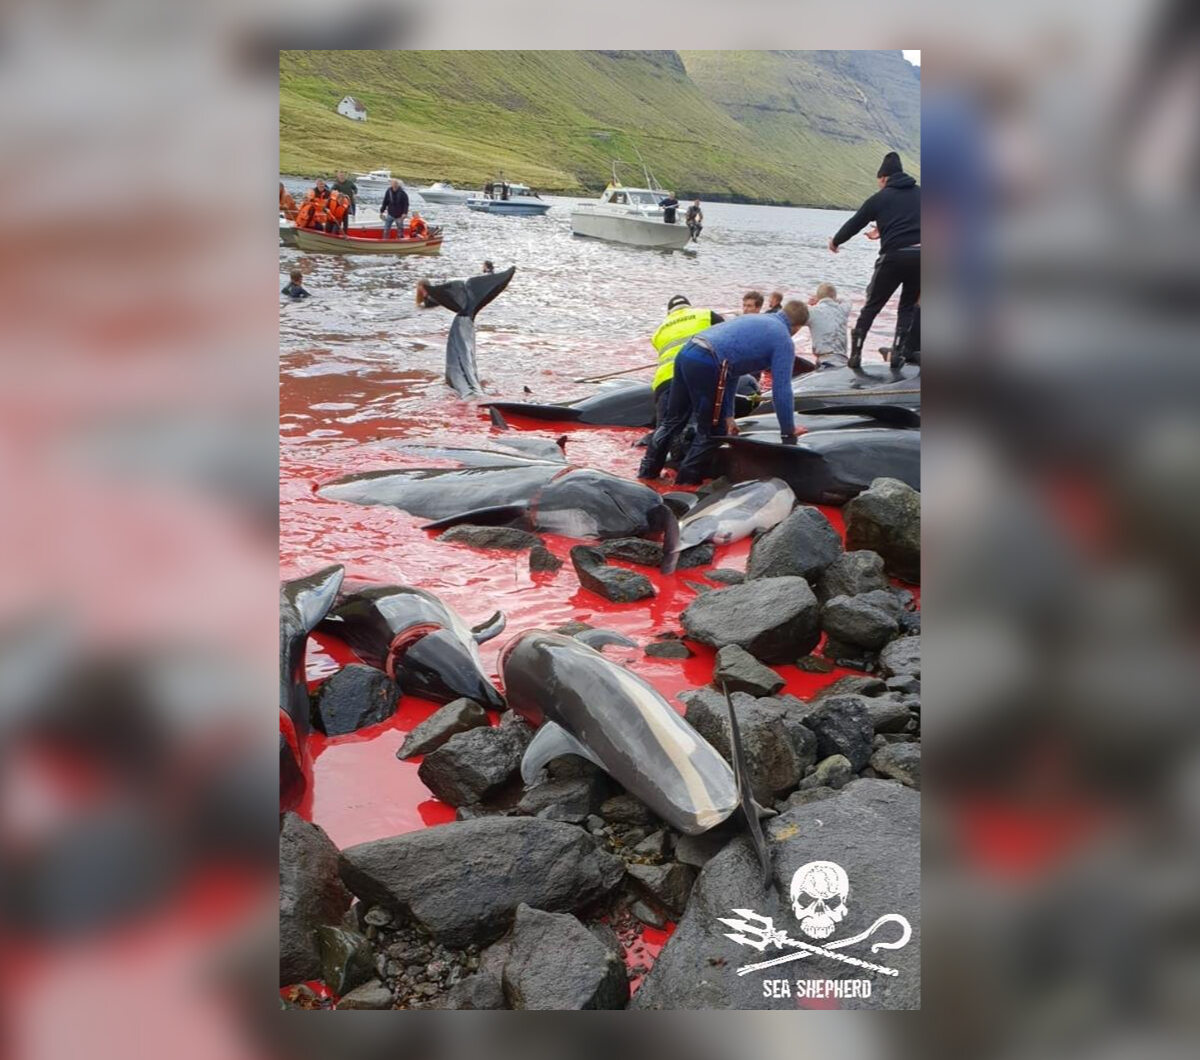 Życie straciło około 80 grindwali i 13 delfinów 